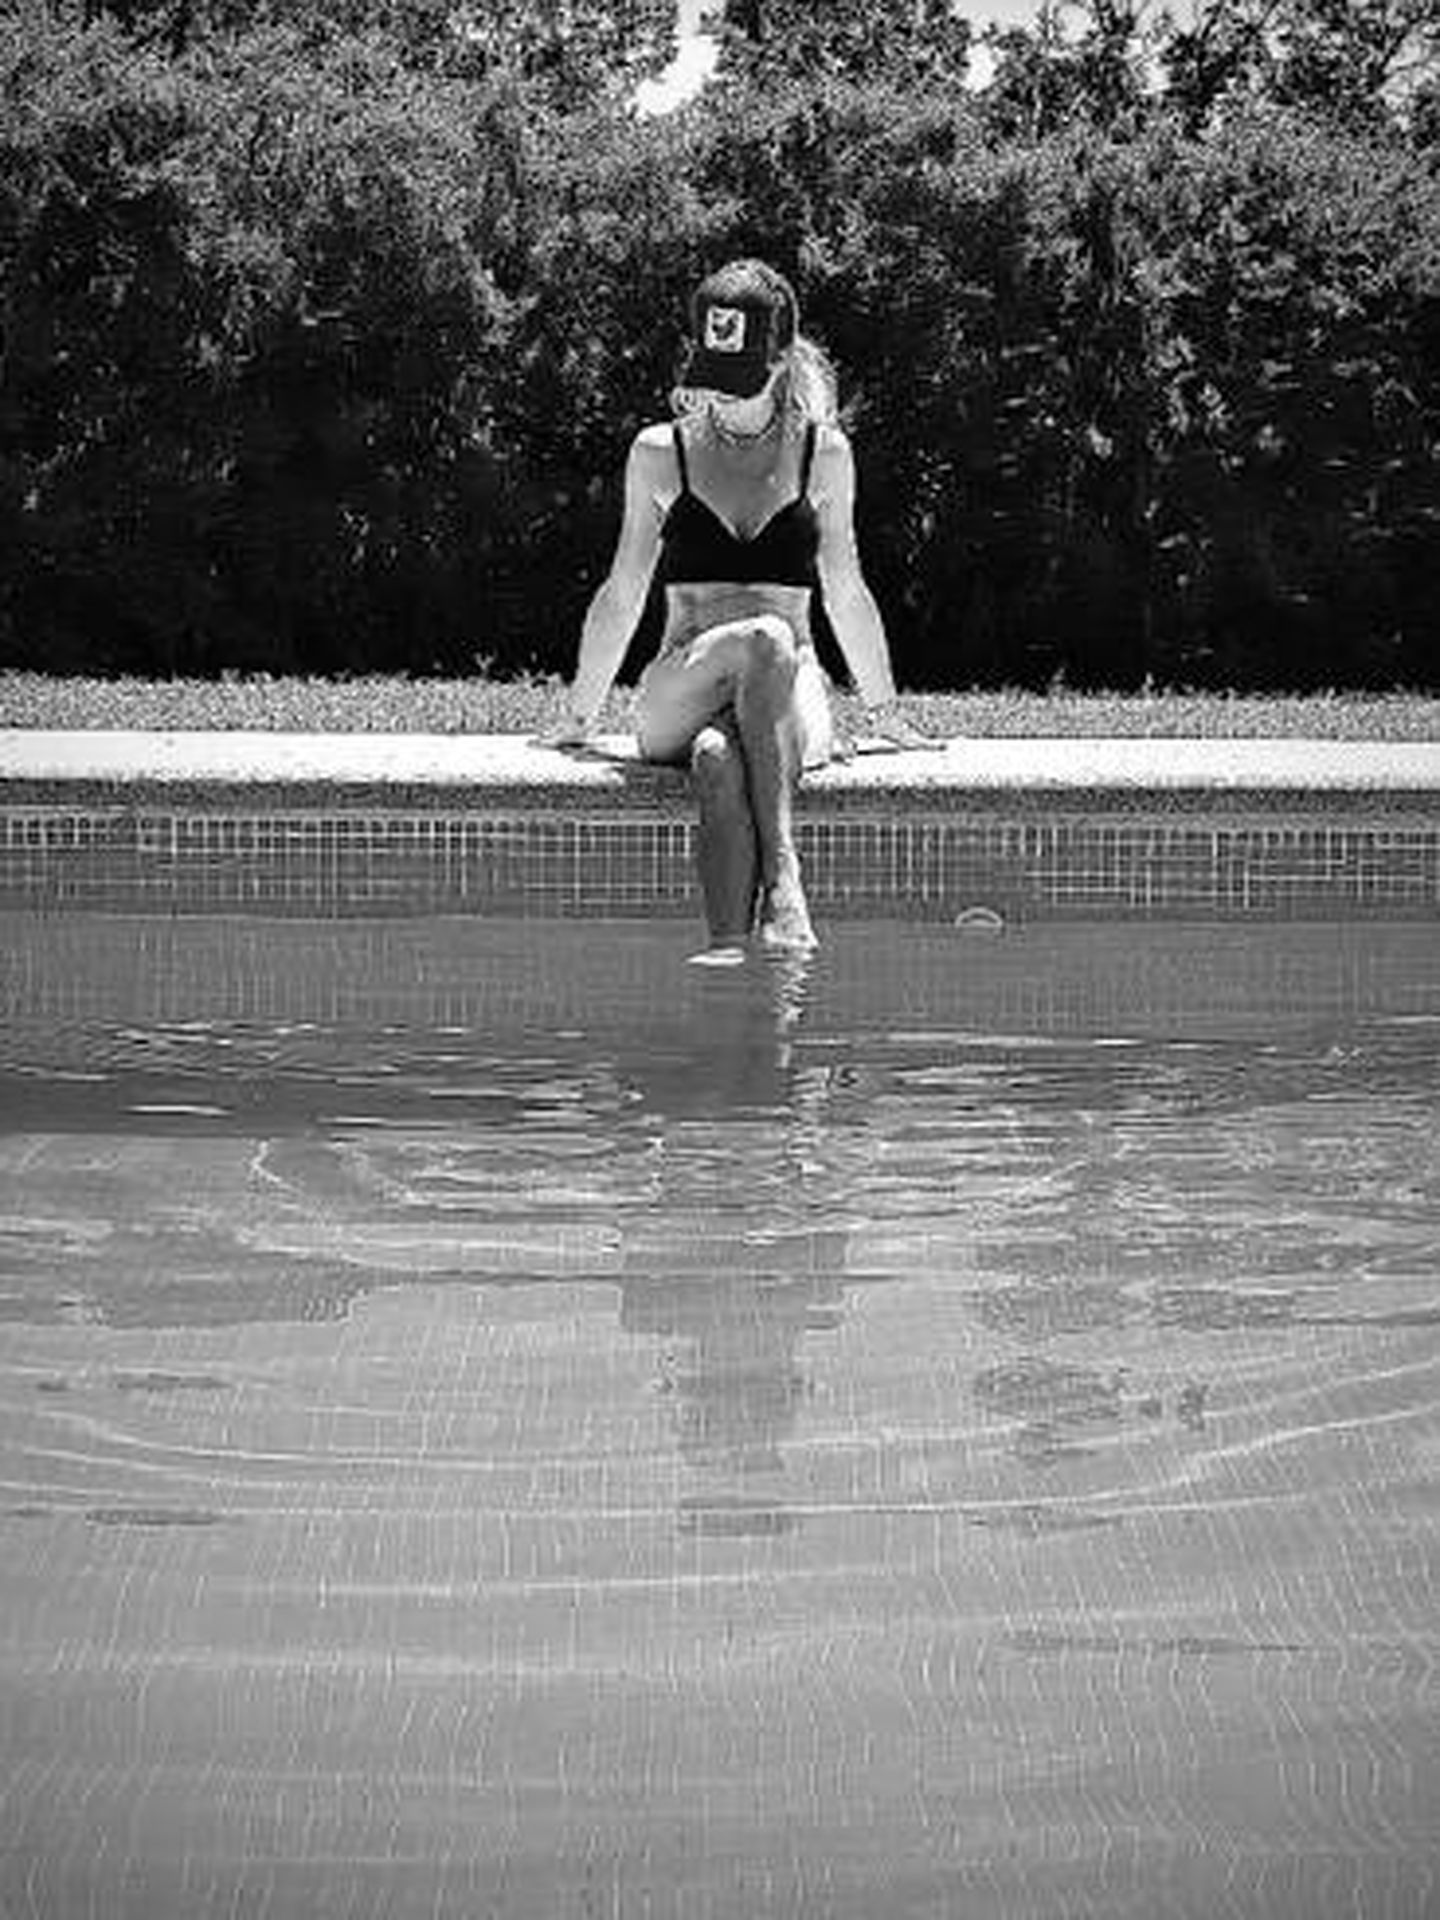 Una tarde de piscina en familia. (Instagram/@ameliabono)